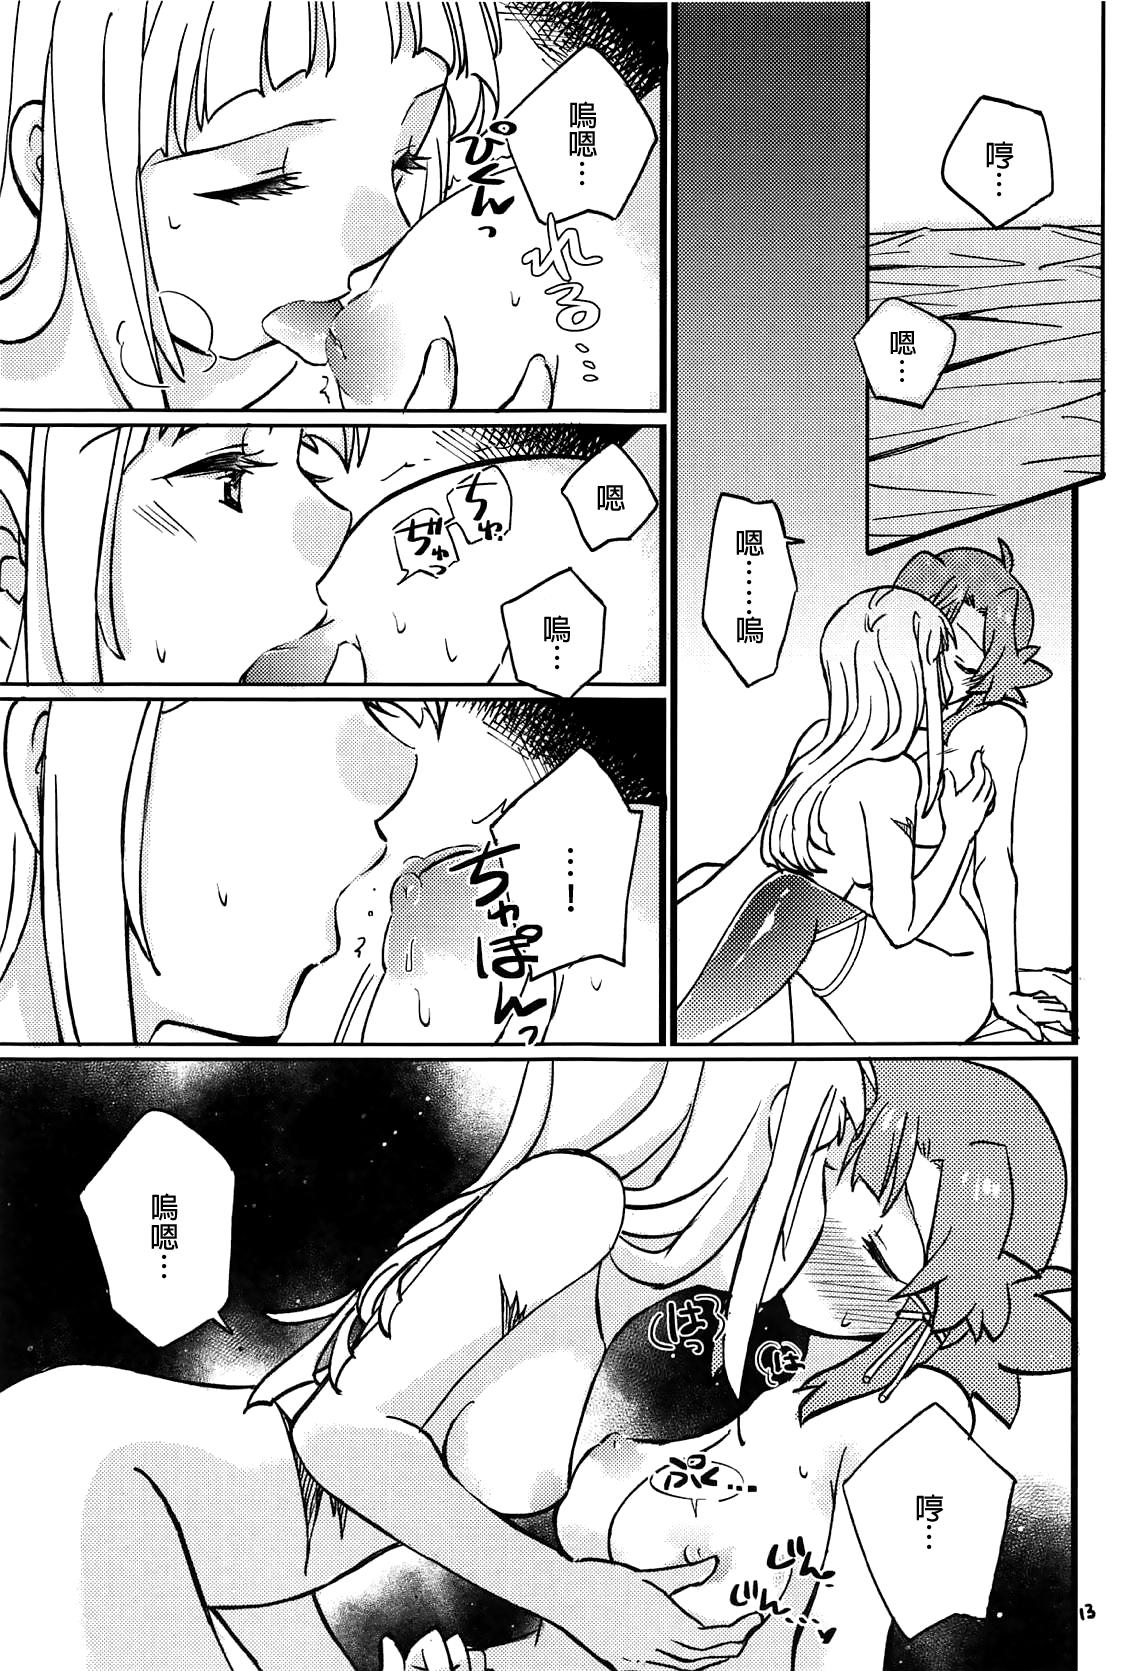 Fake Tits Adokenai Yoru no Futarigoto - Shuumatsu no izetta Exgf - Page 12